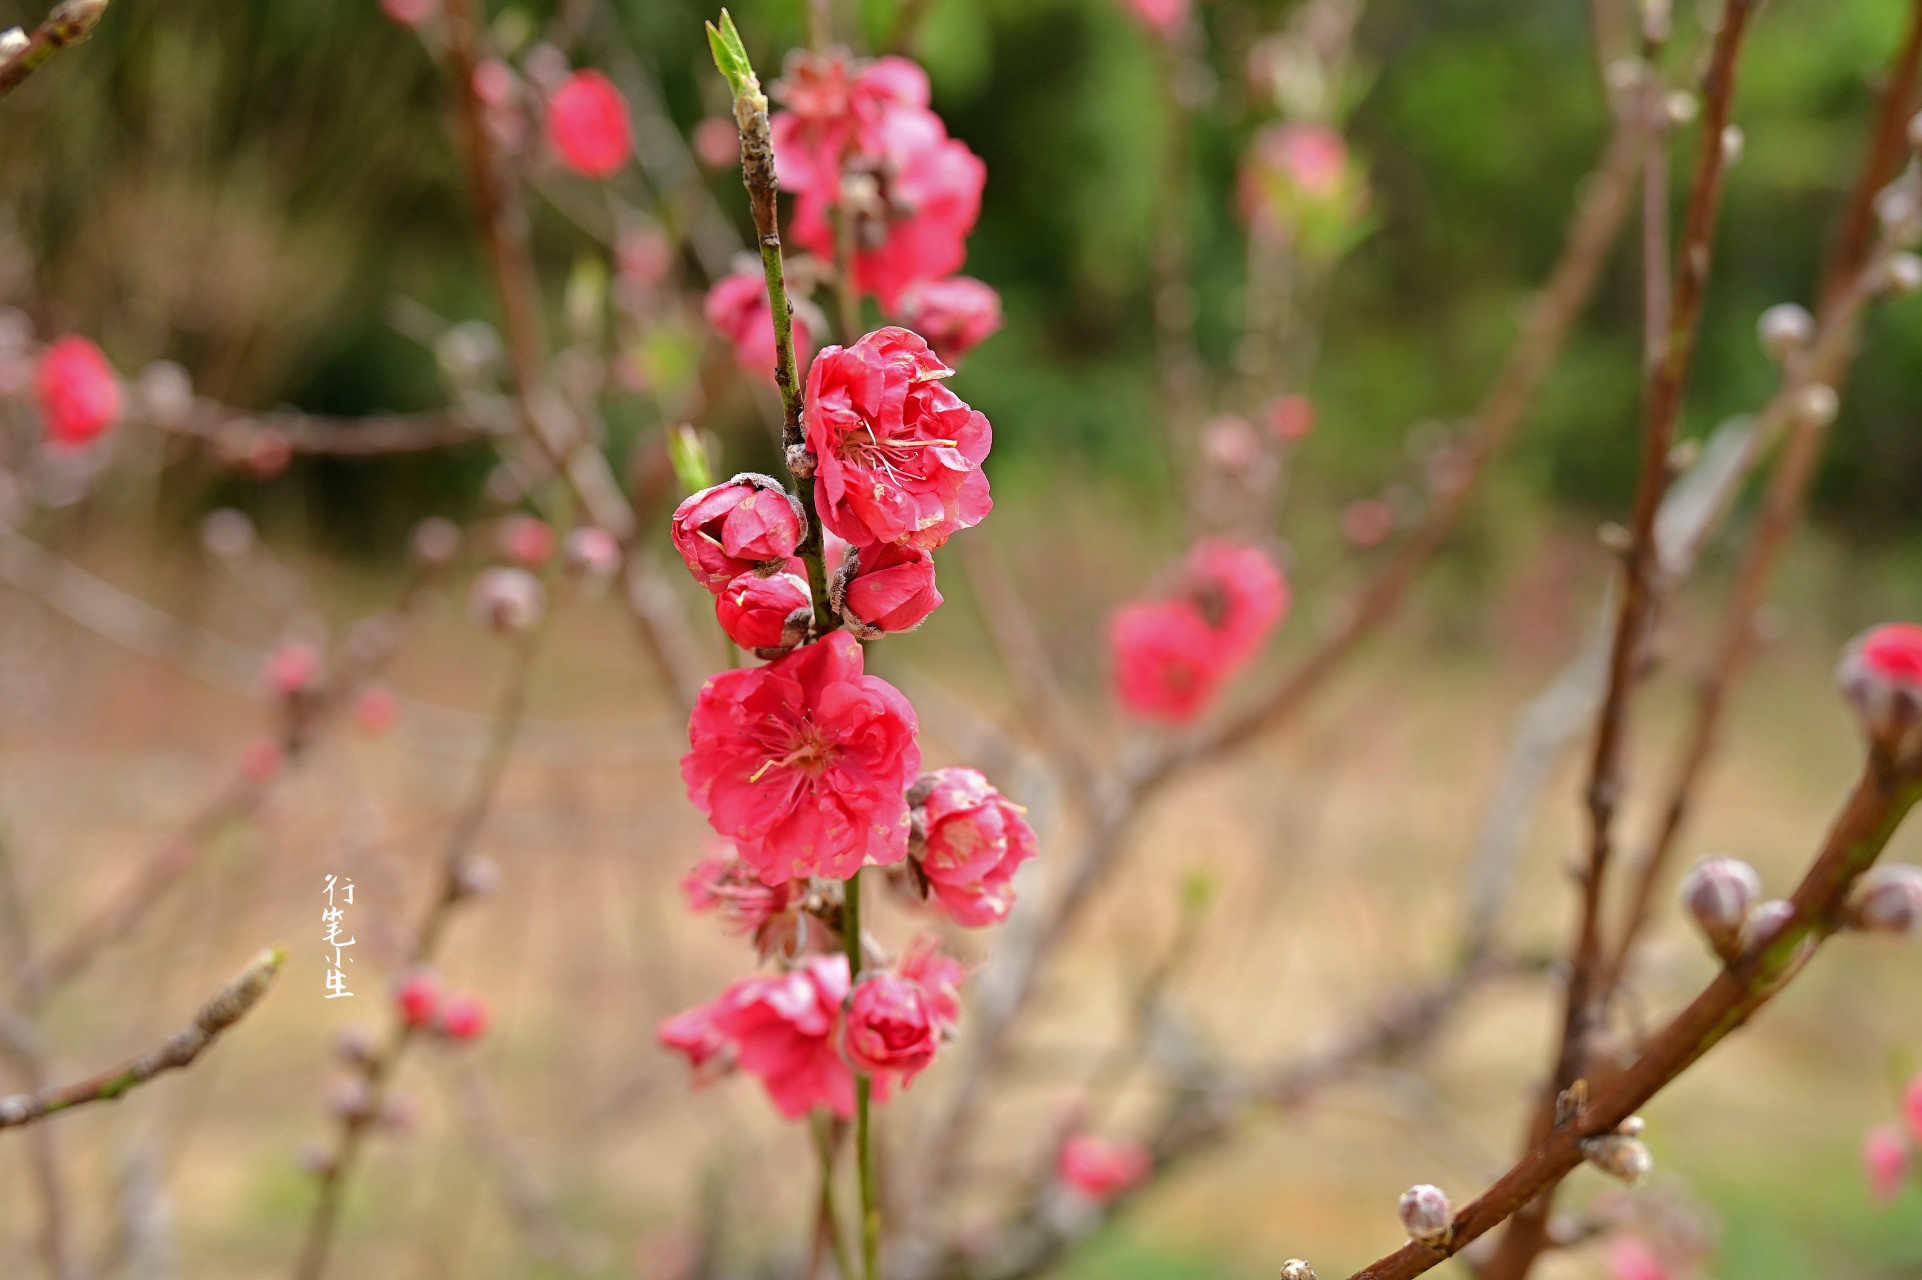 初春二月,一起来中山市树木园欣赏桃花吧!